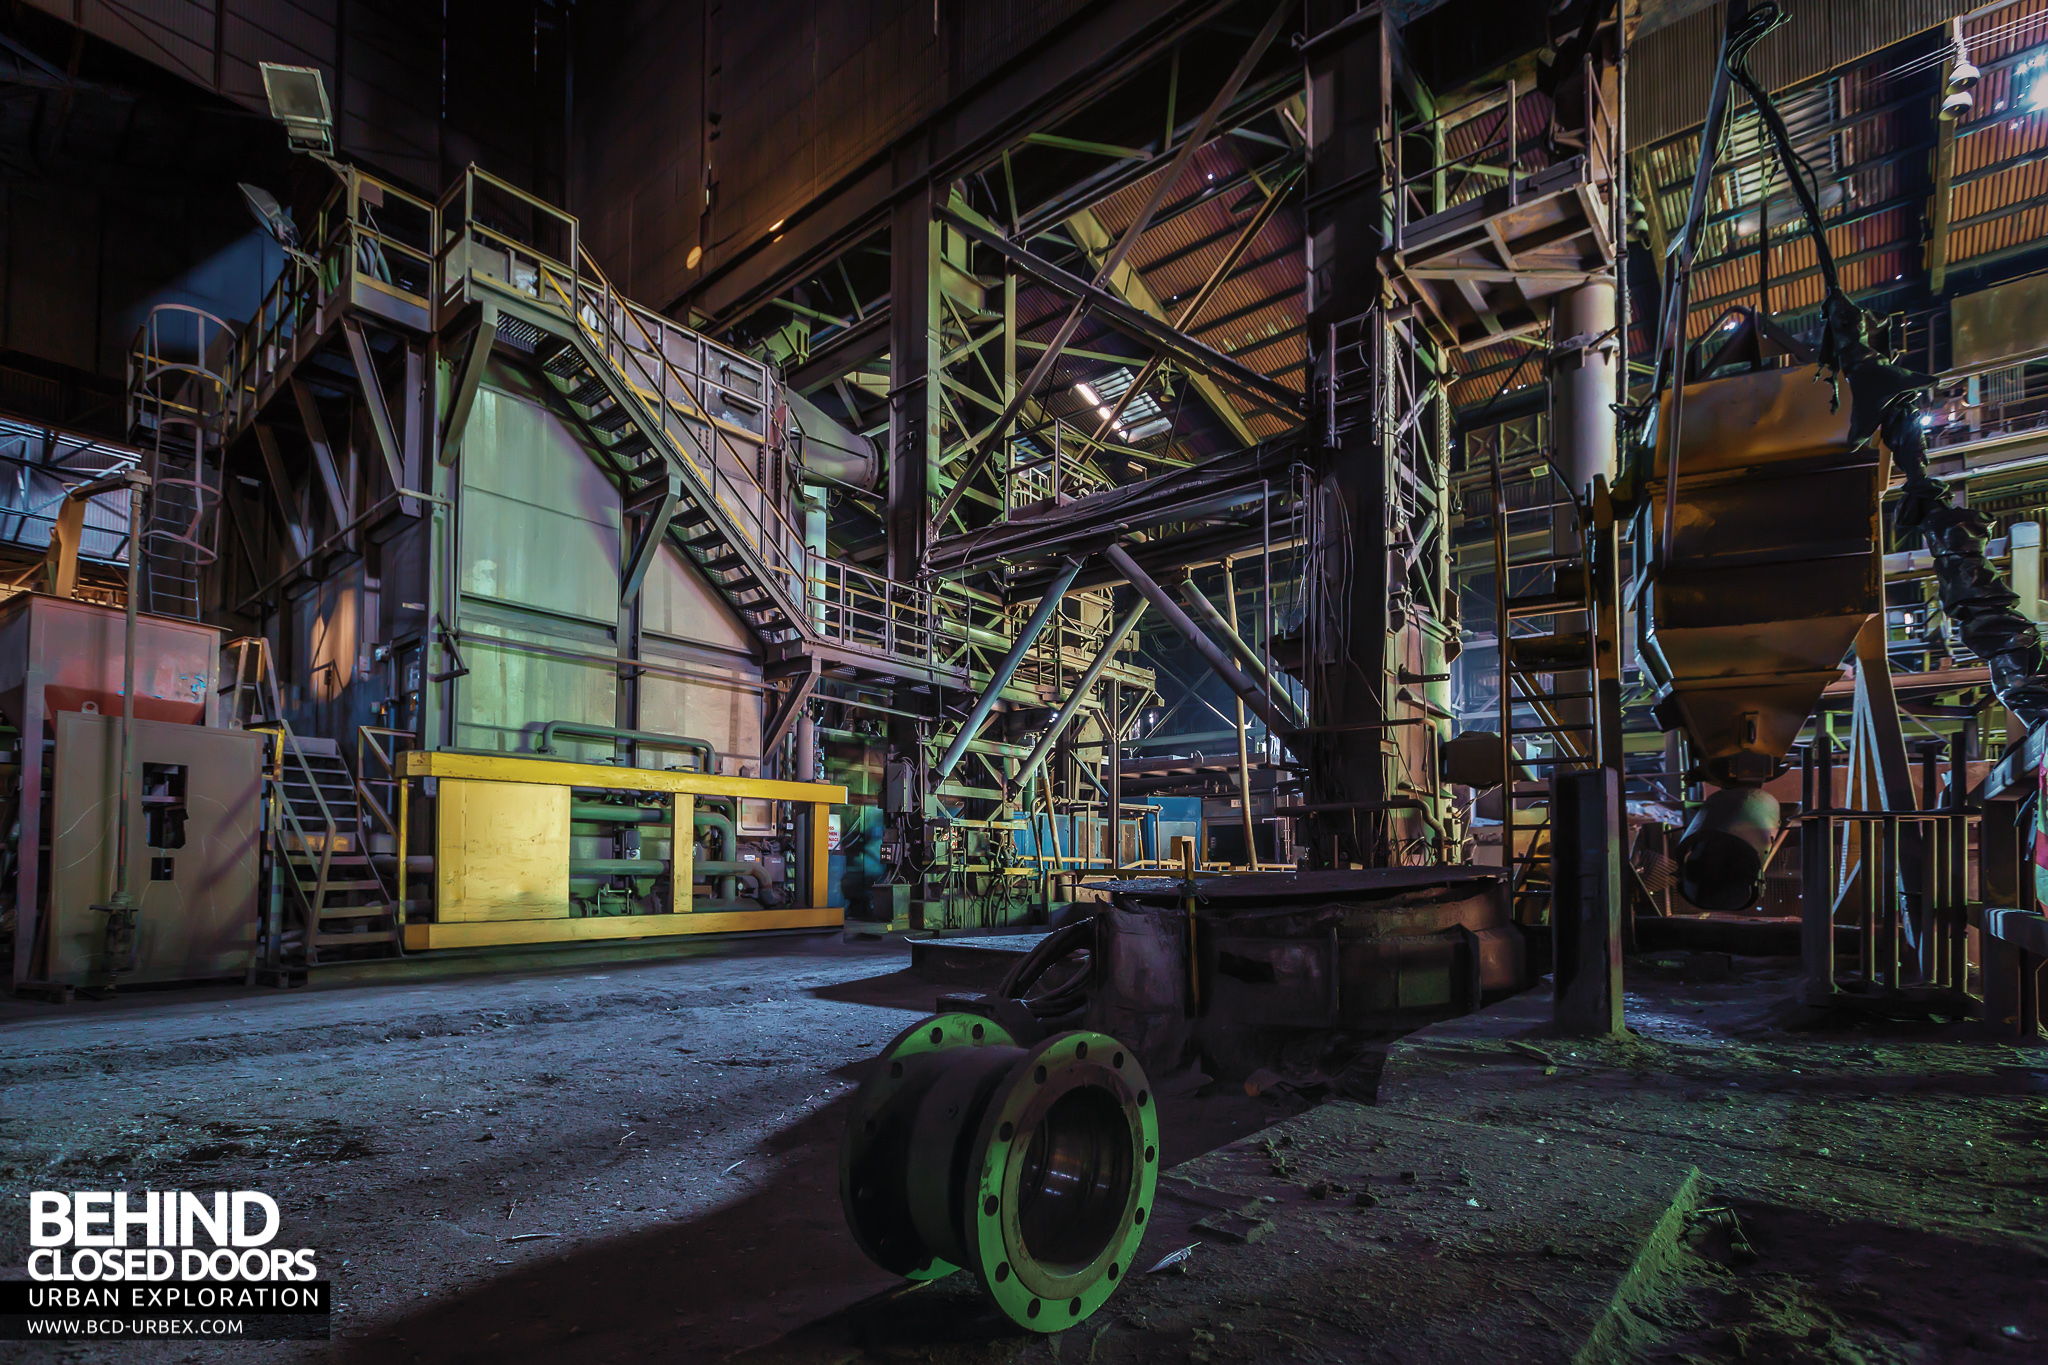 Thamesteel Steel Works, Sheerness, UK » Urbex | Behind Closed Doors ...